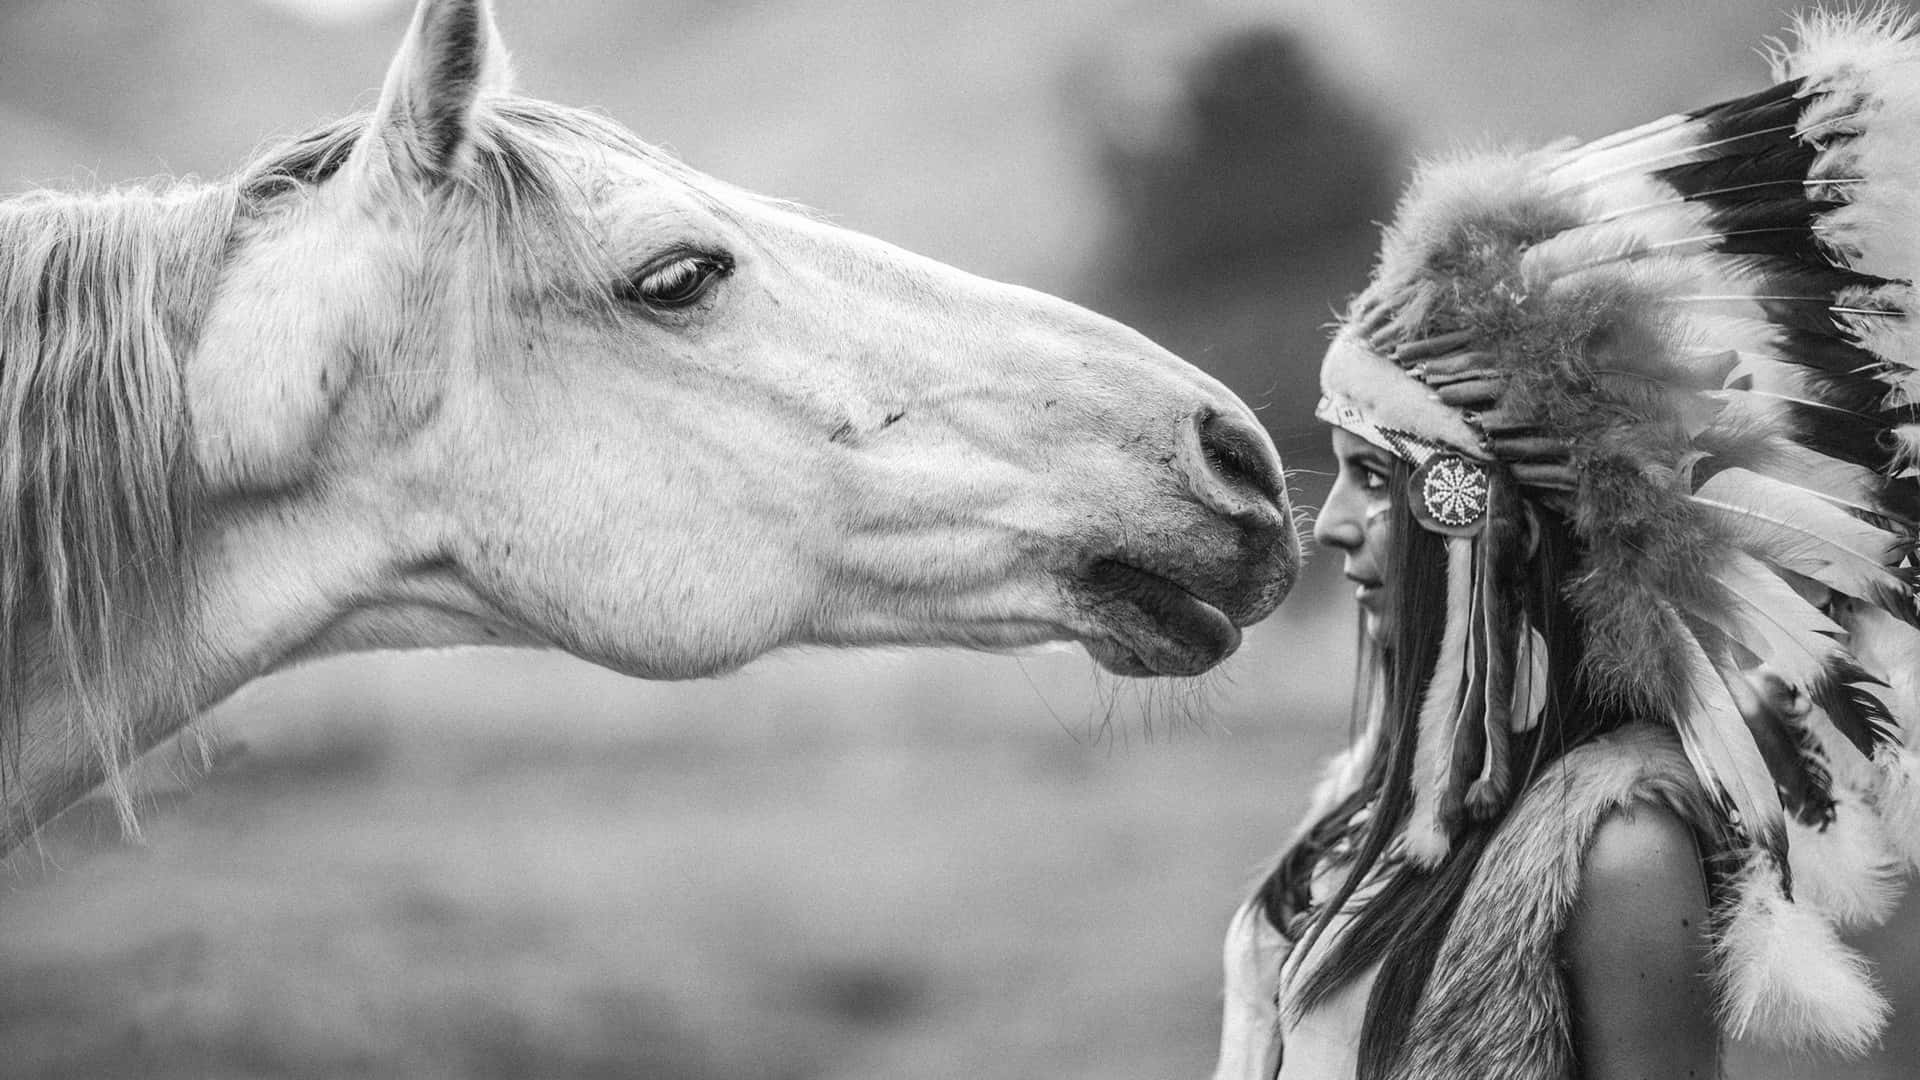 Enkvinna I En Ursprungsbefolkningens Amerikanska Huvudbonad Som Kysser En Häst Wallpaper